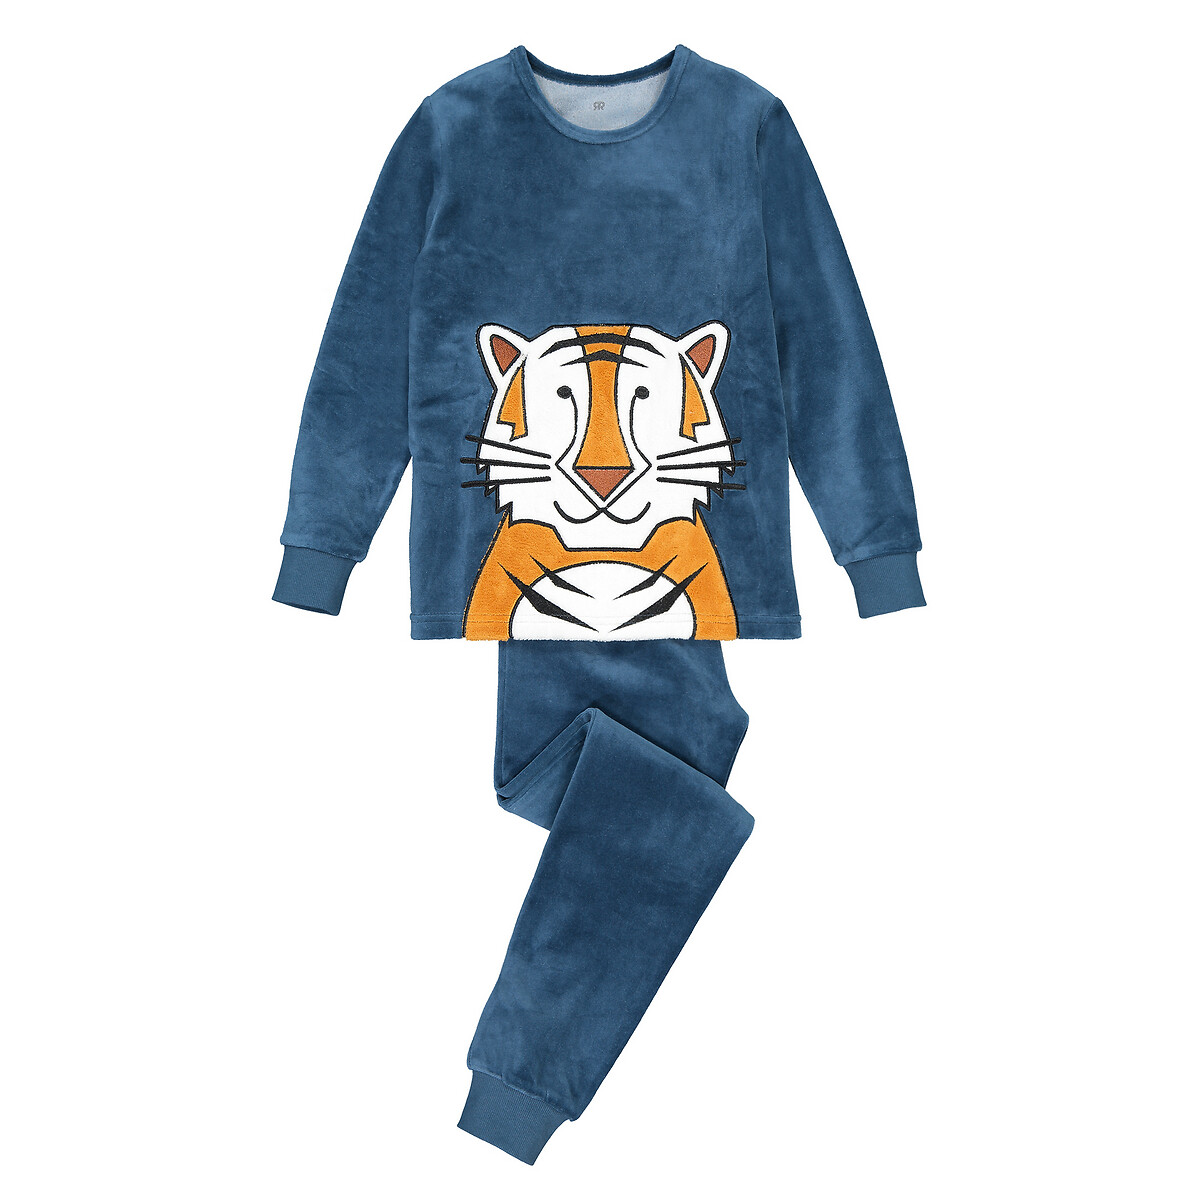 Пижама Из велюра с рисунком тигр 3-12 лет 8 лет - 126 см синий